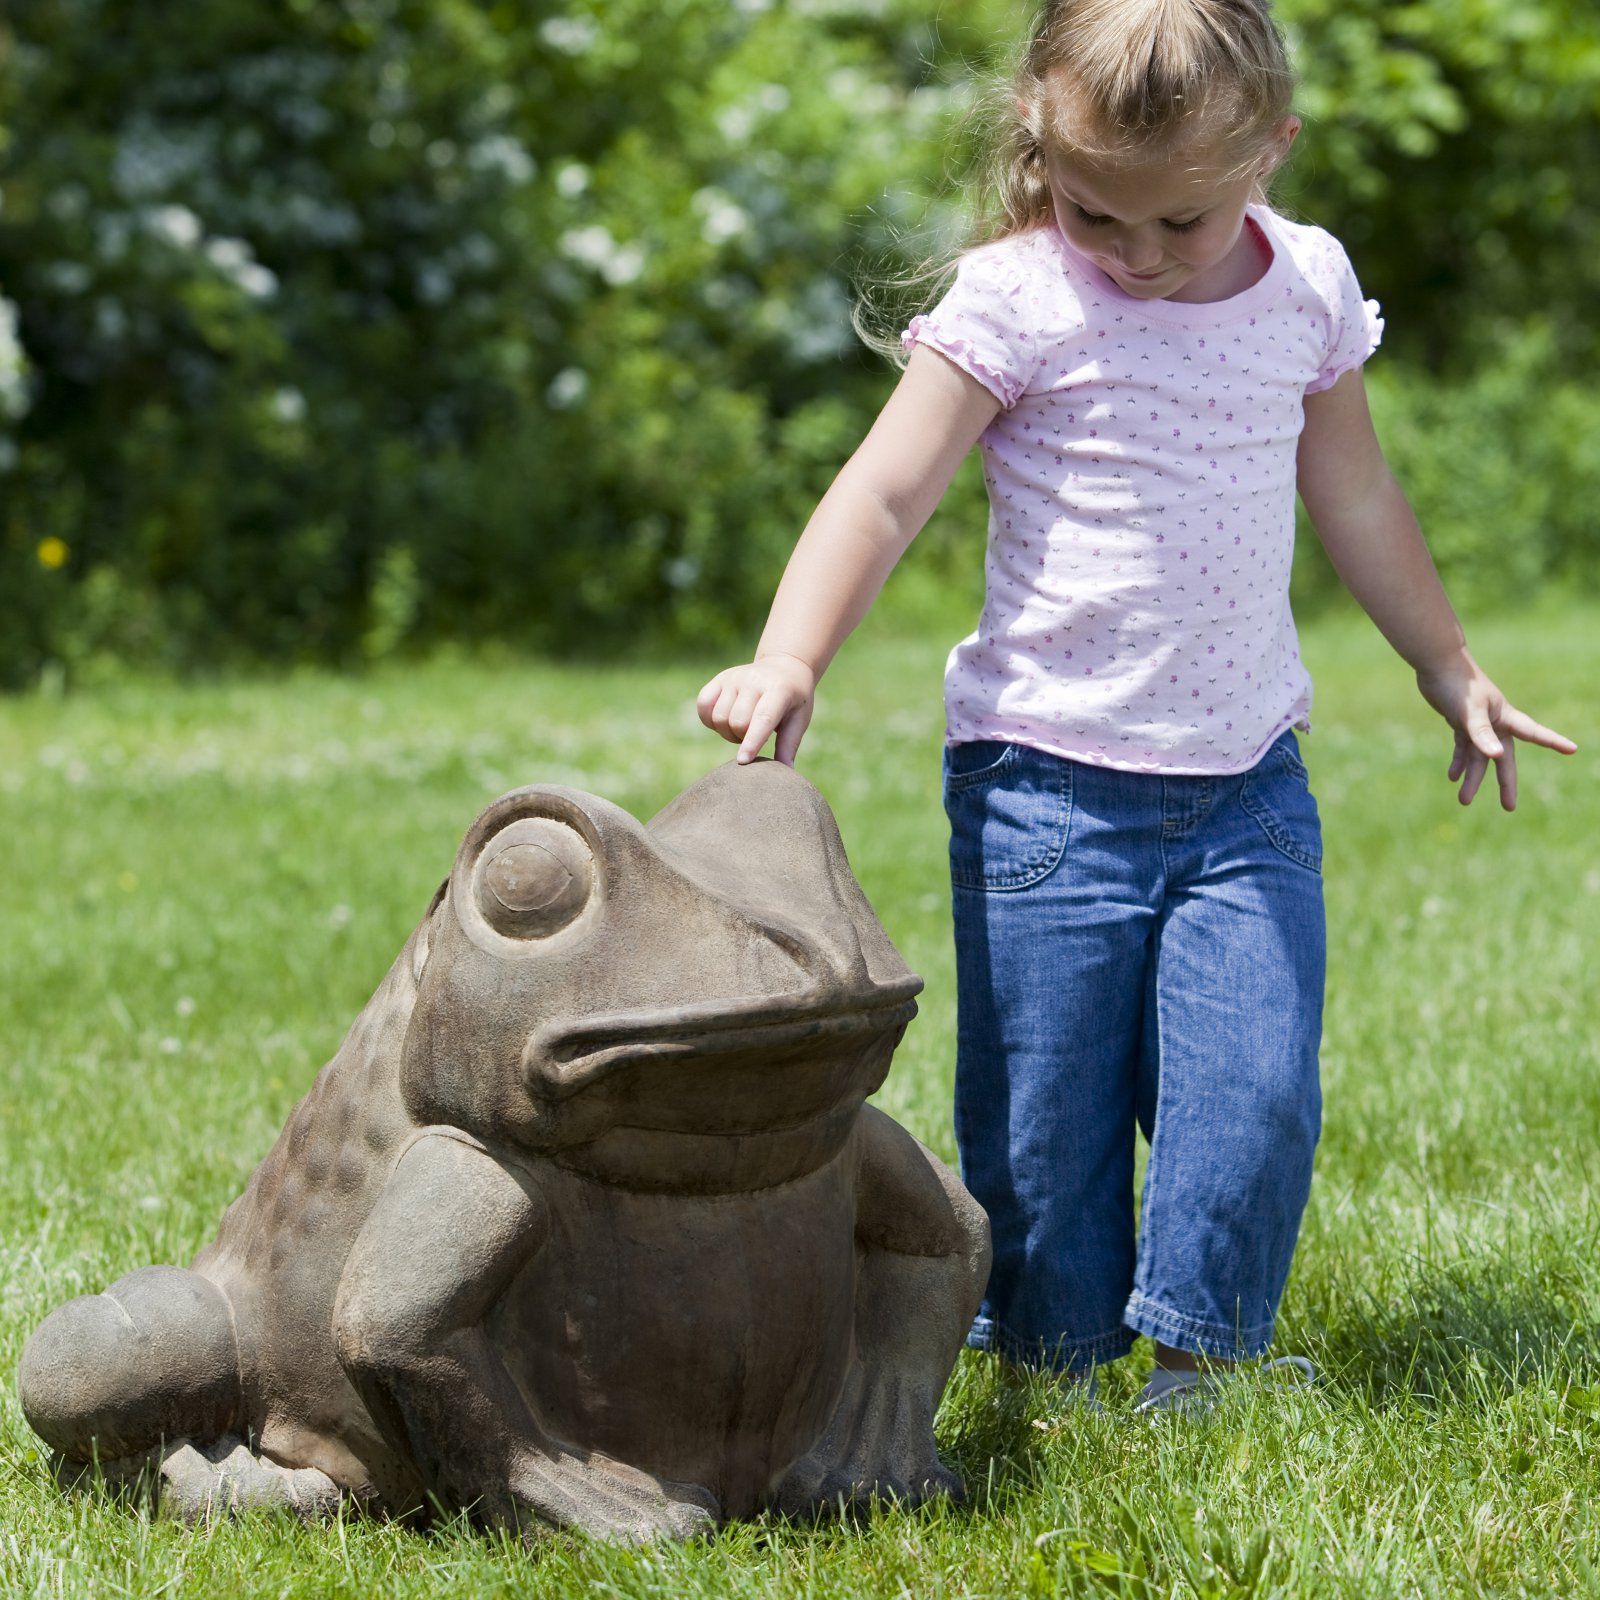 Giant Garden Frog Statue Frog Statues